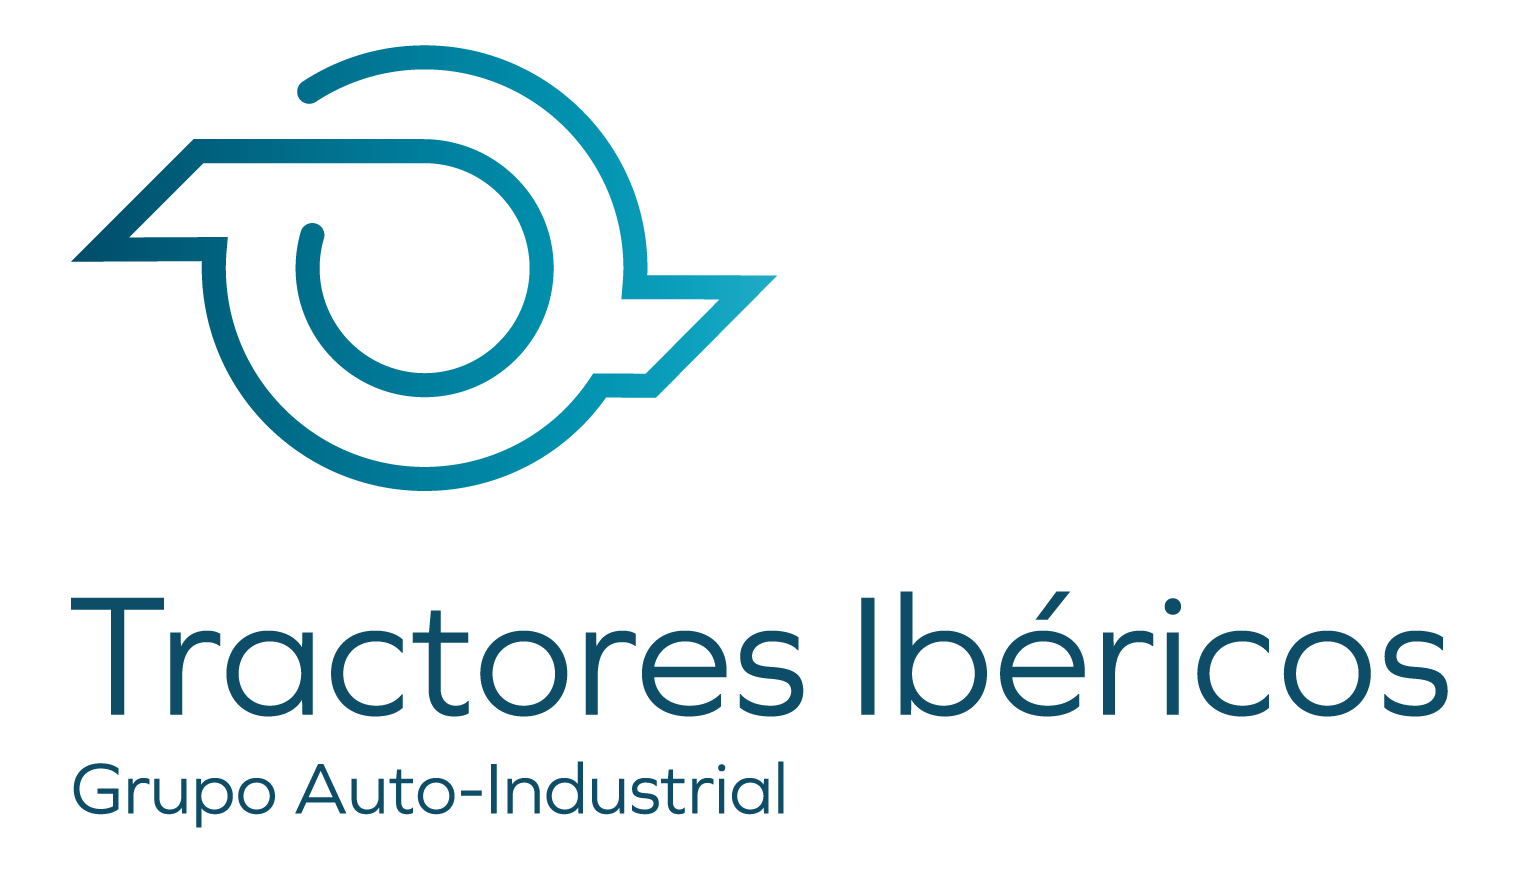 Company logo for 'Tractores Ibéricos'.